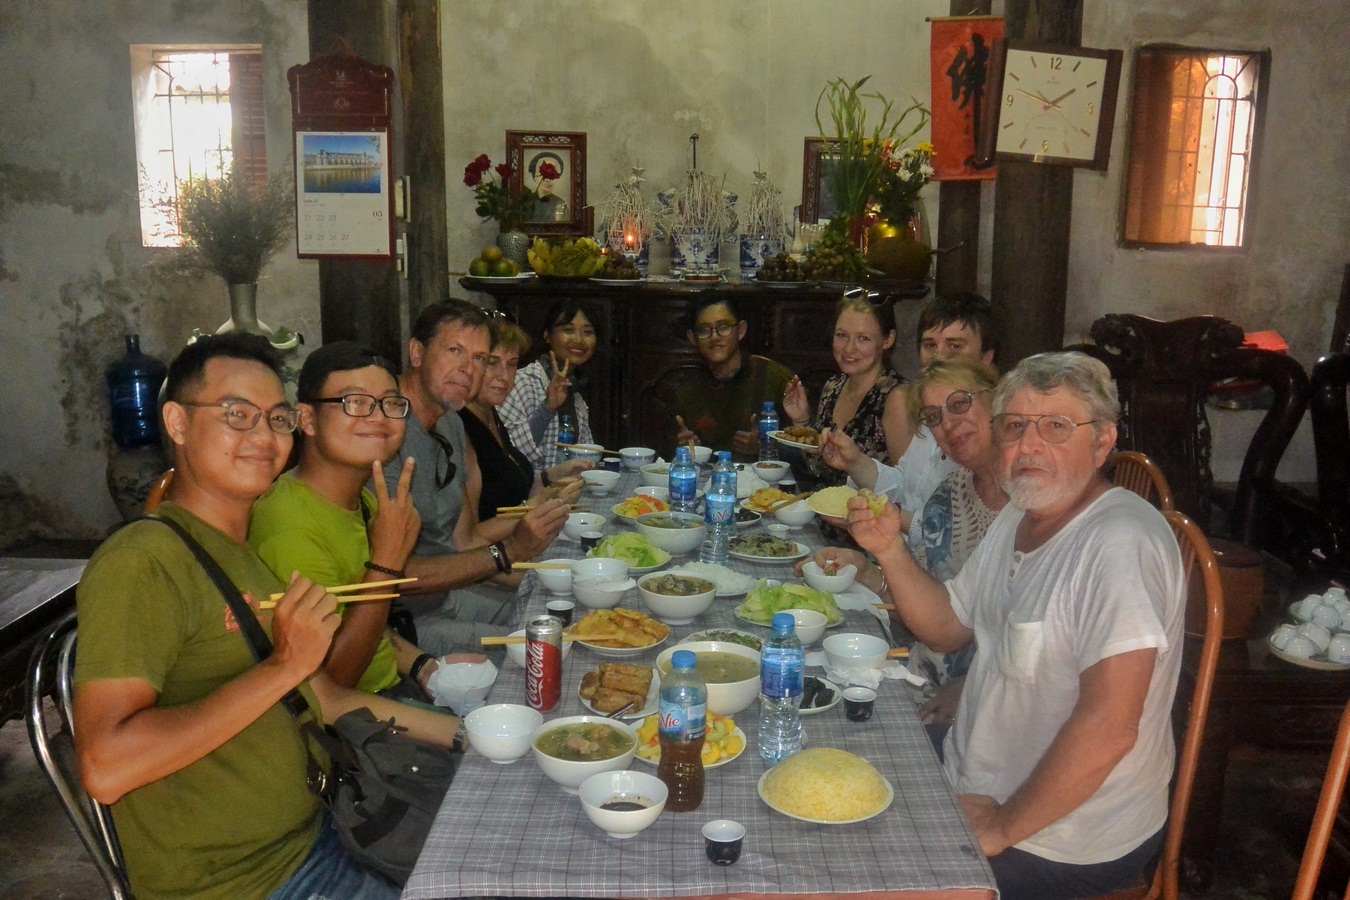 Hanoi Street Food Tours